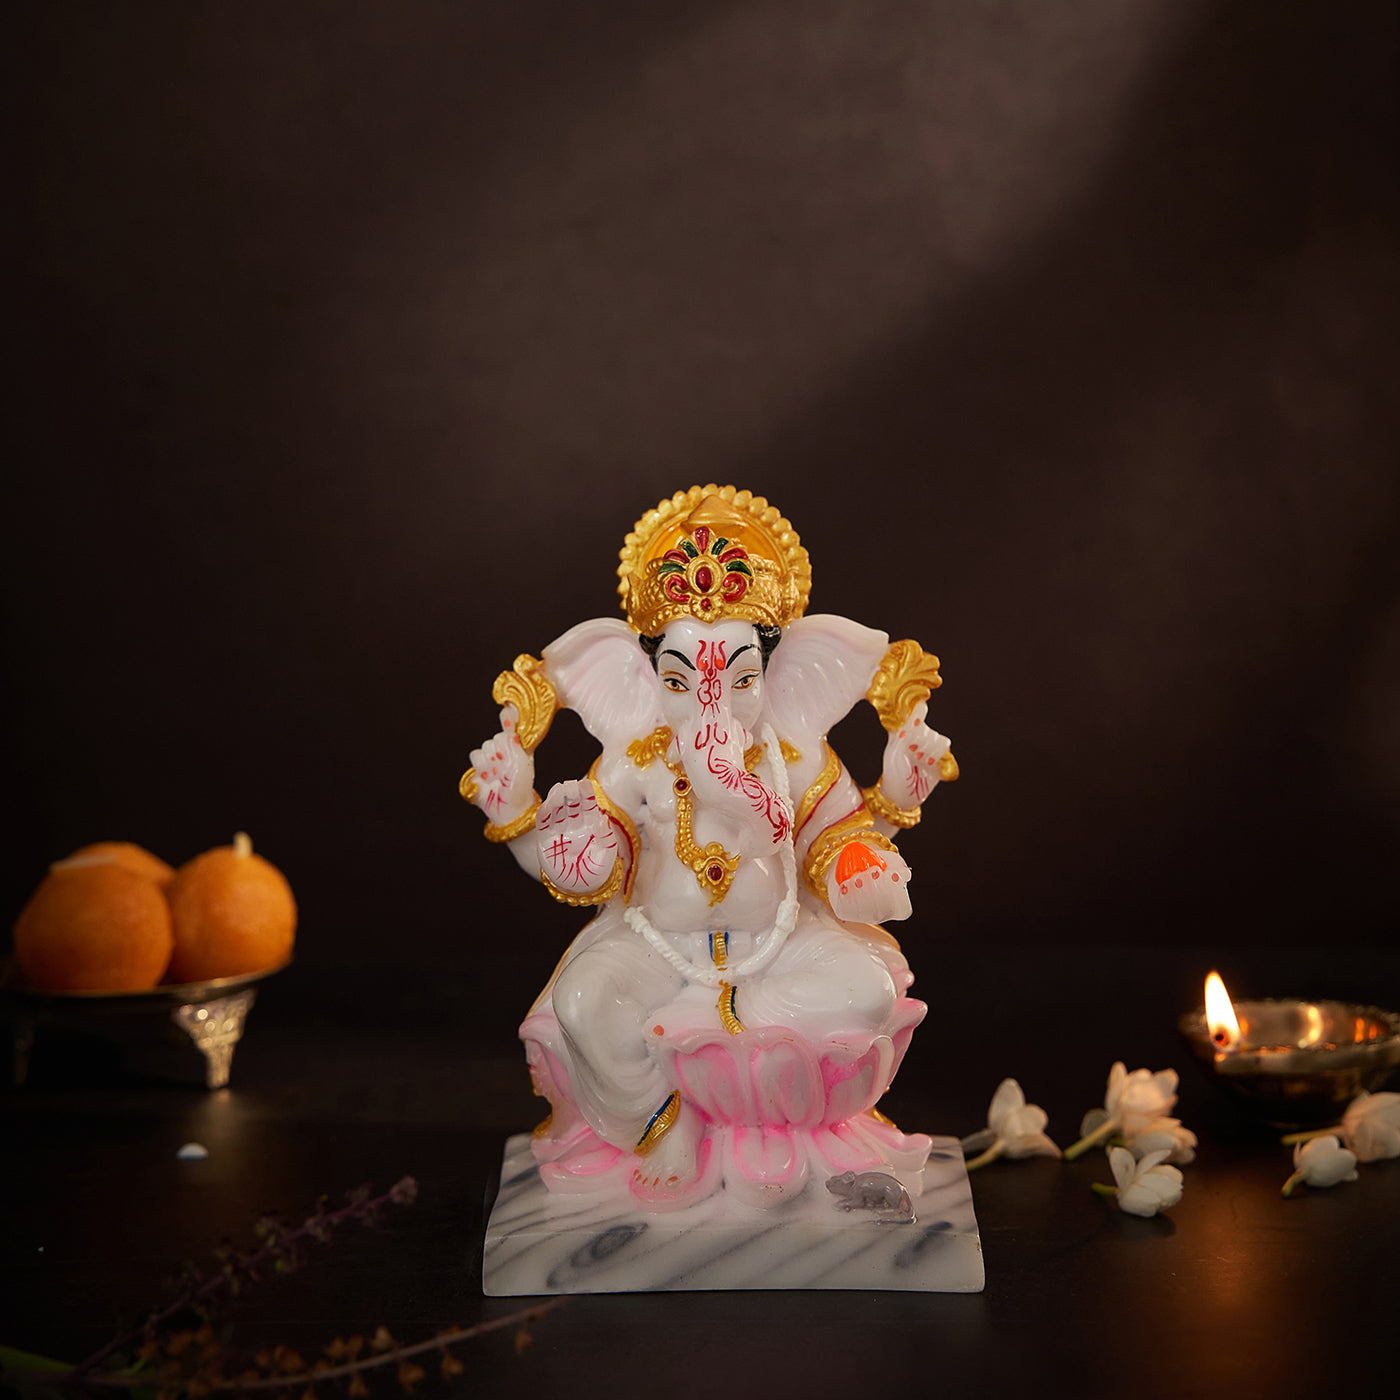 Lord Ganesha | Ganpati | Vinayak Idol In Marble Dust Handpainted Multi Color